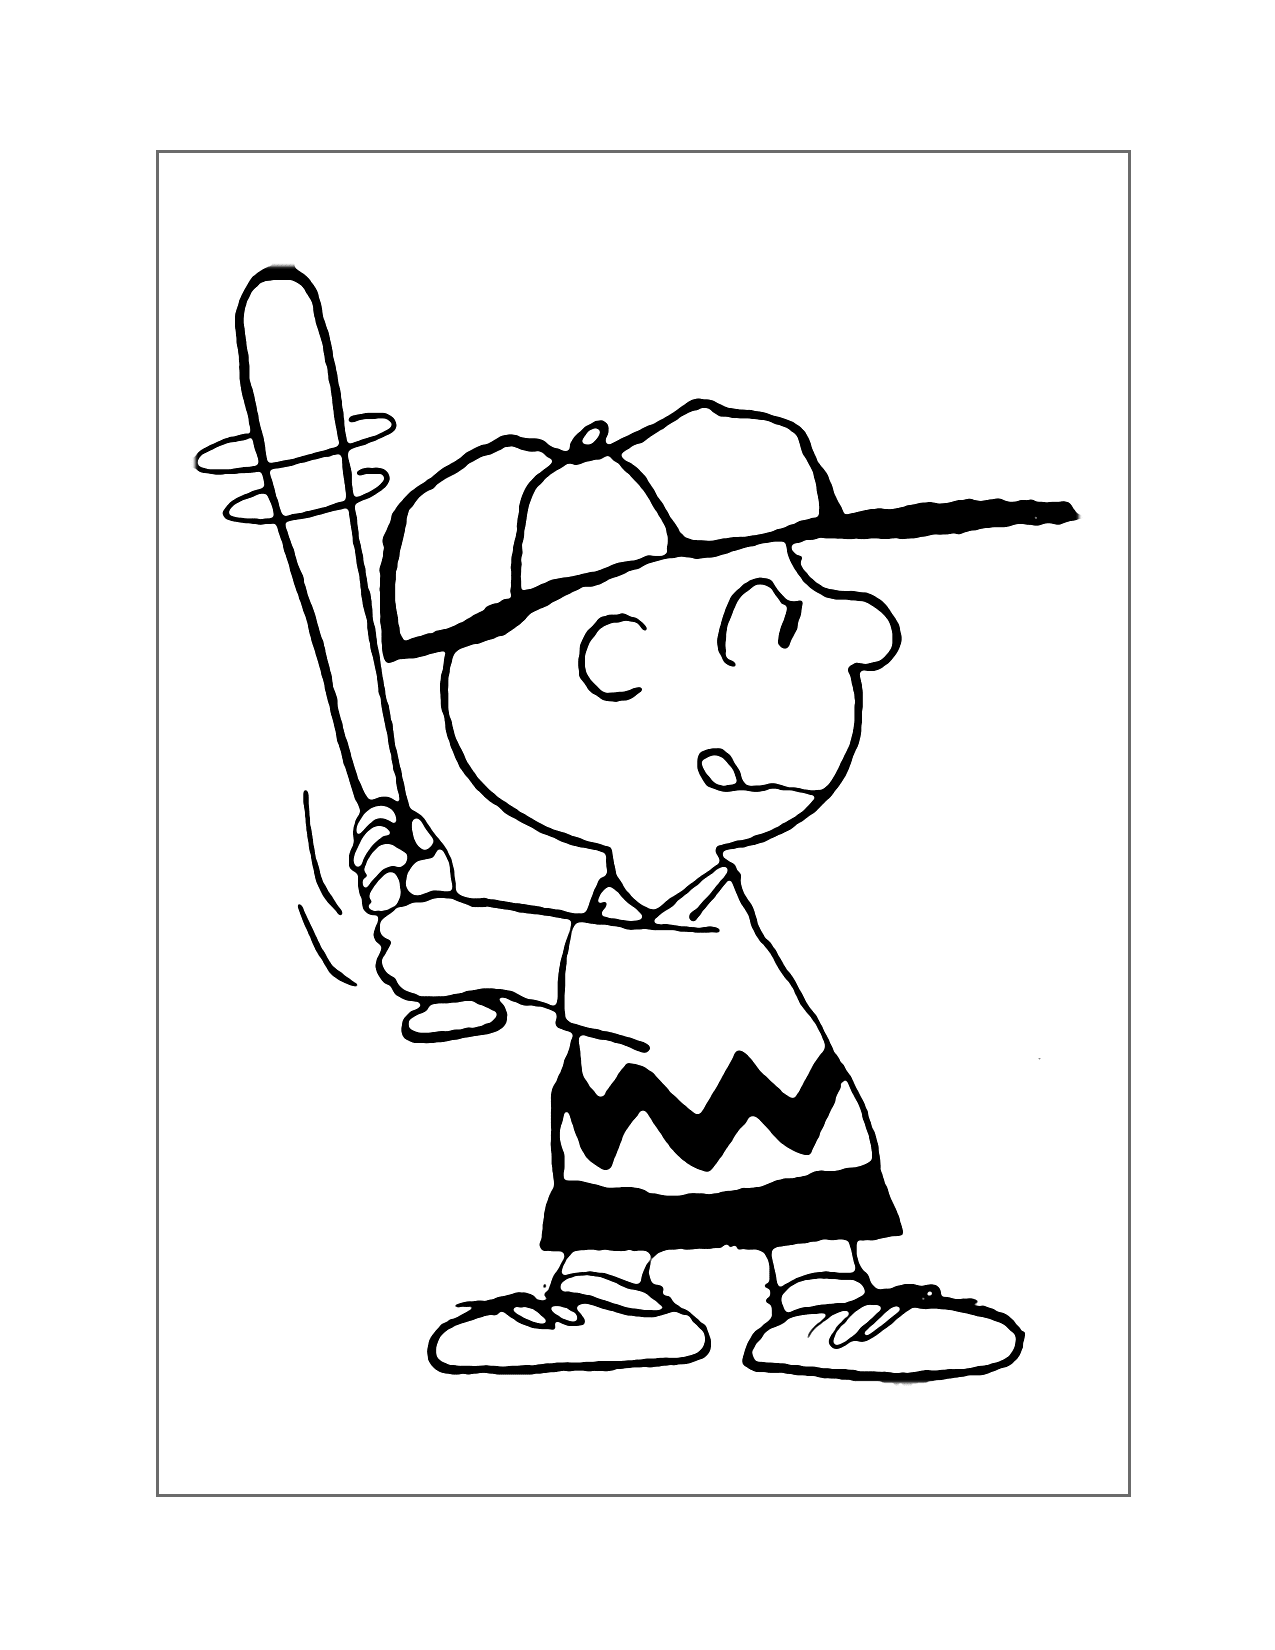 Charlie Brown At Bat Coloring Page